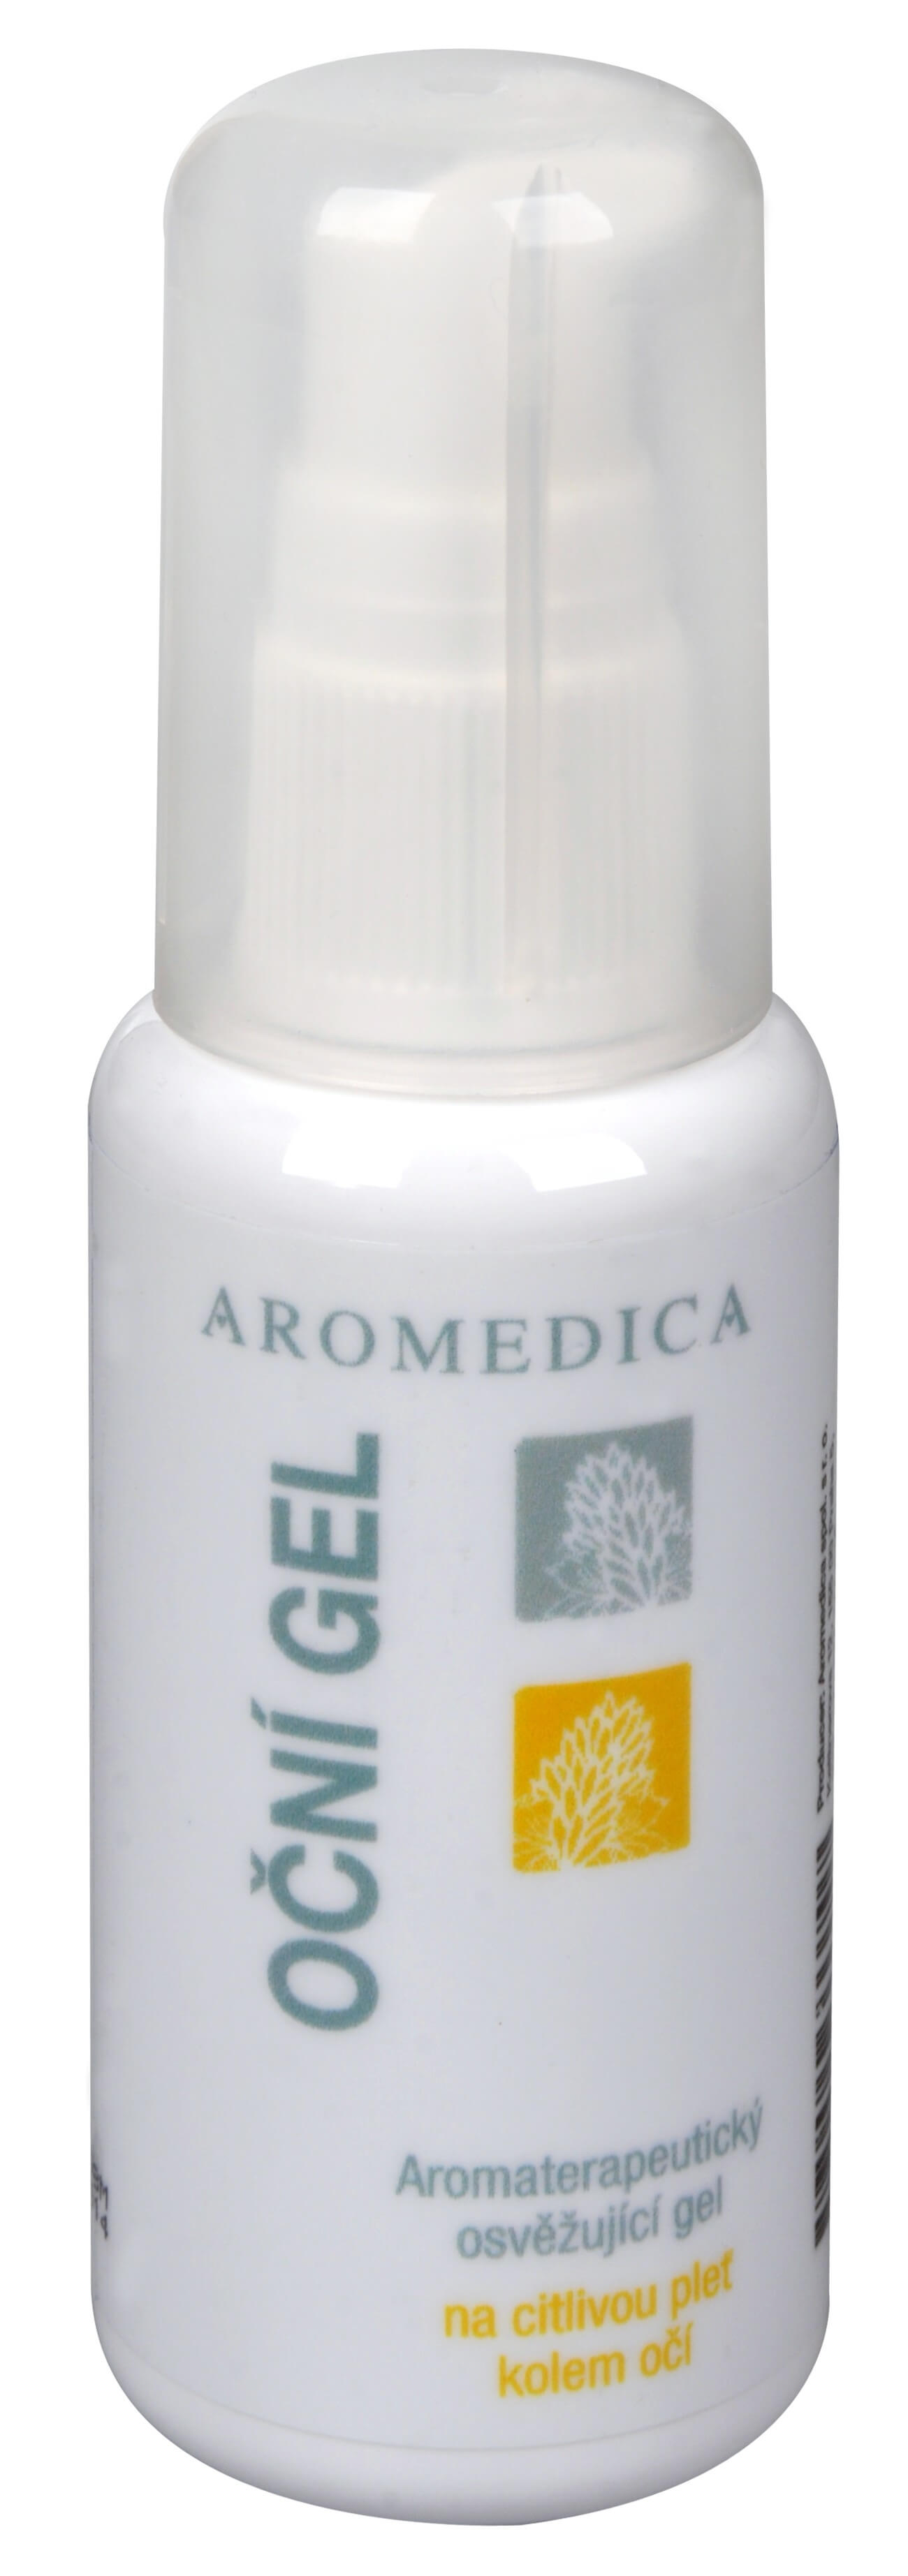 Zobrazit detail výrobku Aromedica Oční gel - aromaterapeutický osvěžující gel na citlivou pleť kolem očí 50 ml + 2 měsíce na vrácení zboží